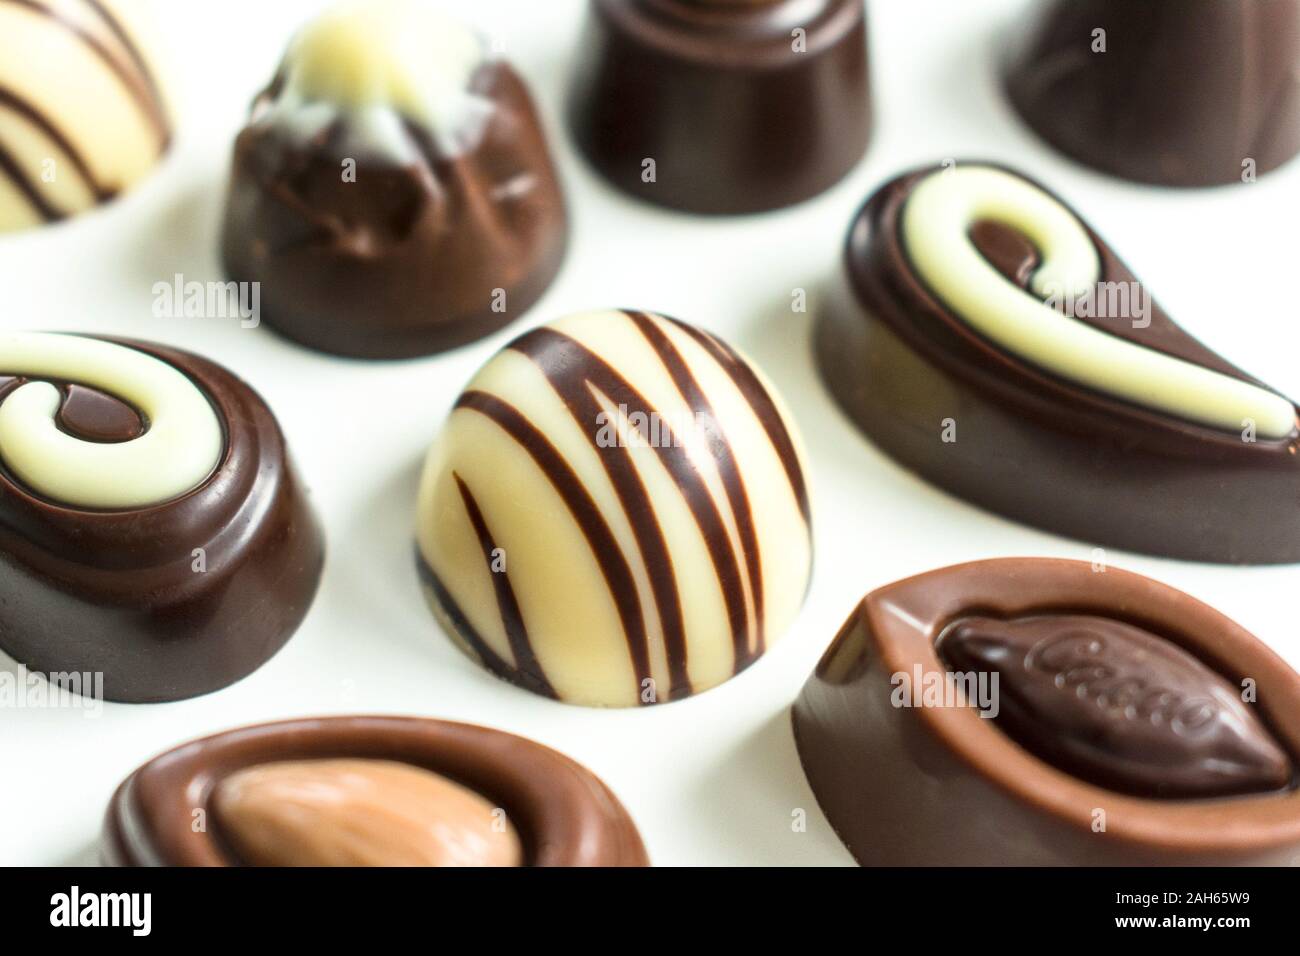 Arrière-plan de chocolats différents sur un fond blanc. Mise à plat Banque D'Images